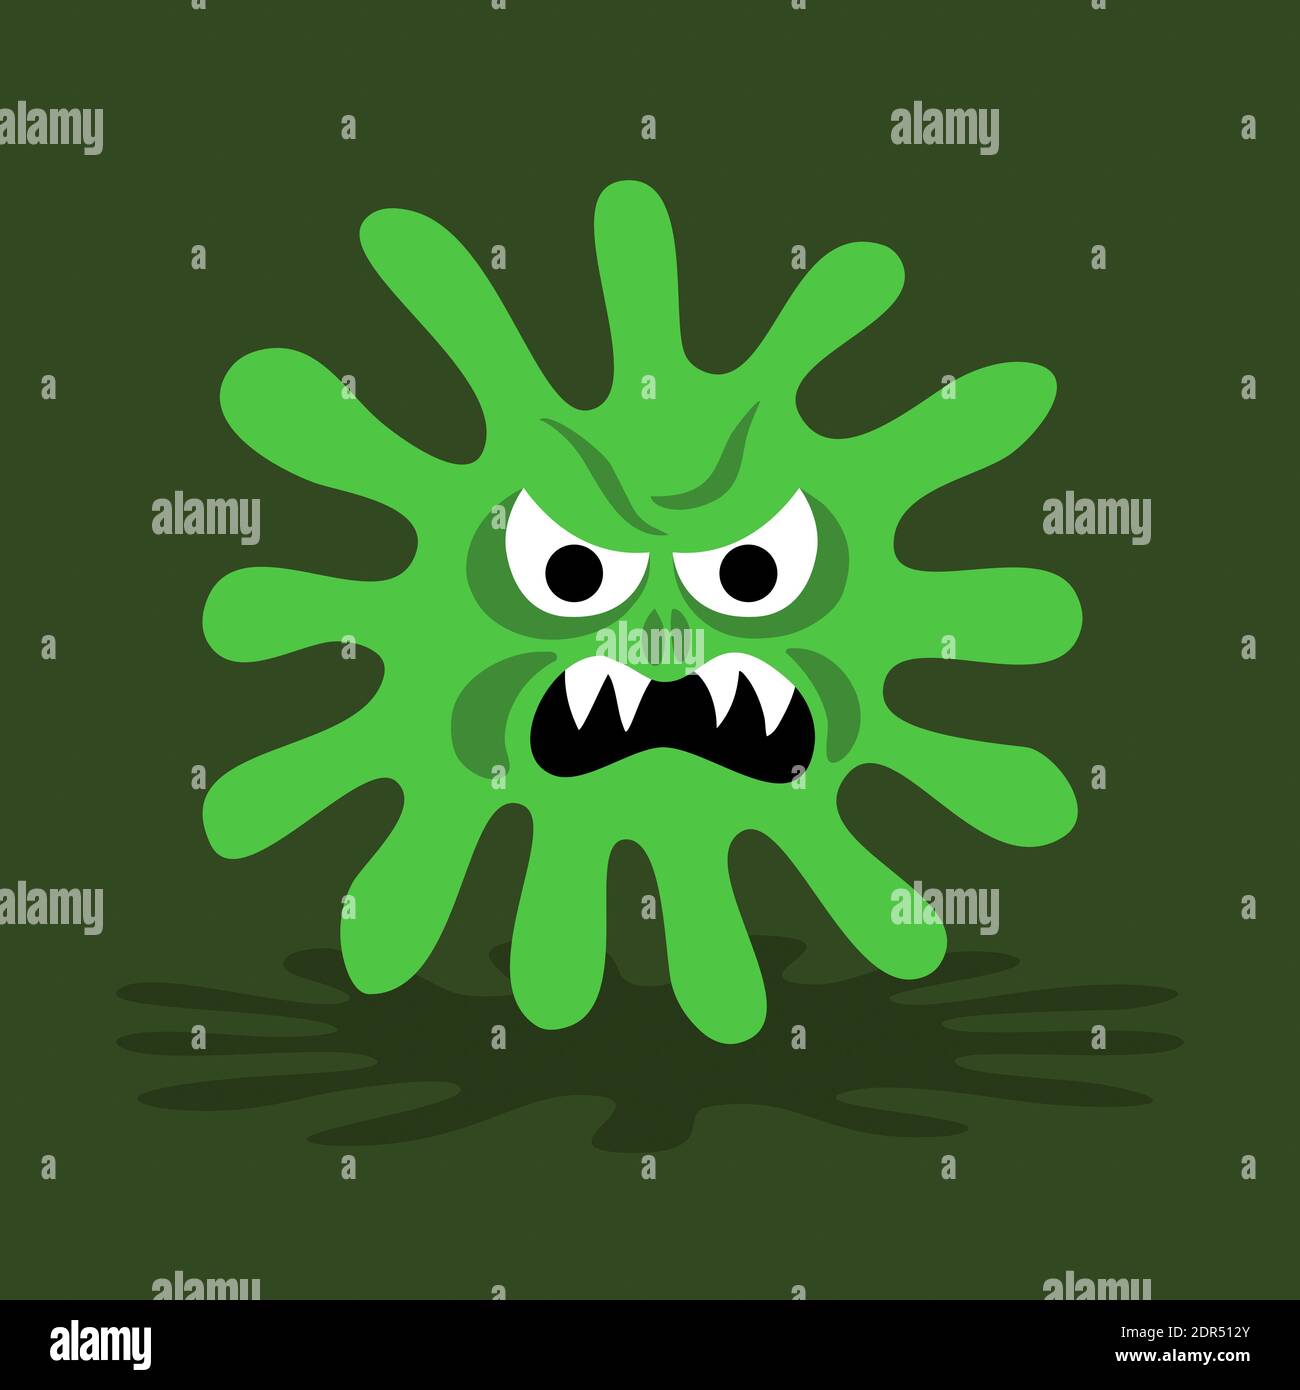 Virus e batteri pericolosi sono aggressivi - minaccia di malattie e malattie. Epidemia, pandemia, epidemia. Illustrazione vettoriale. Foto Stock